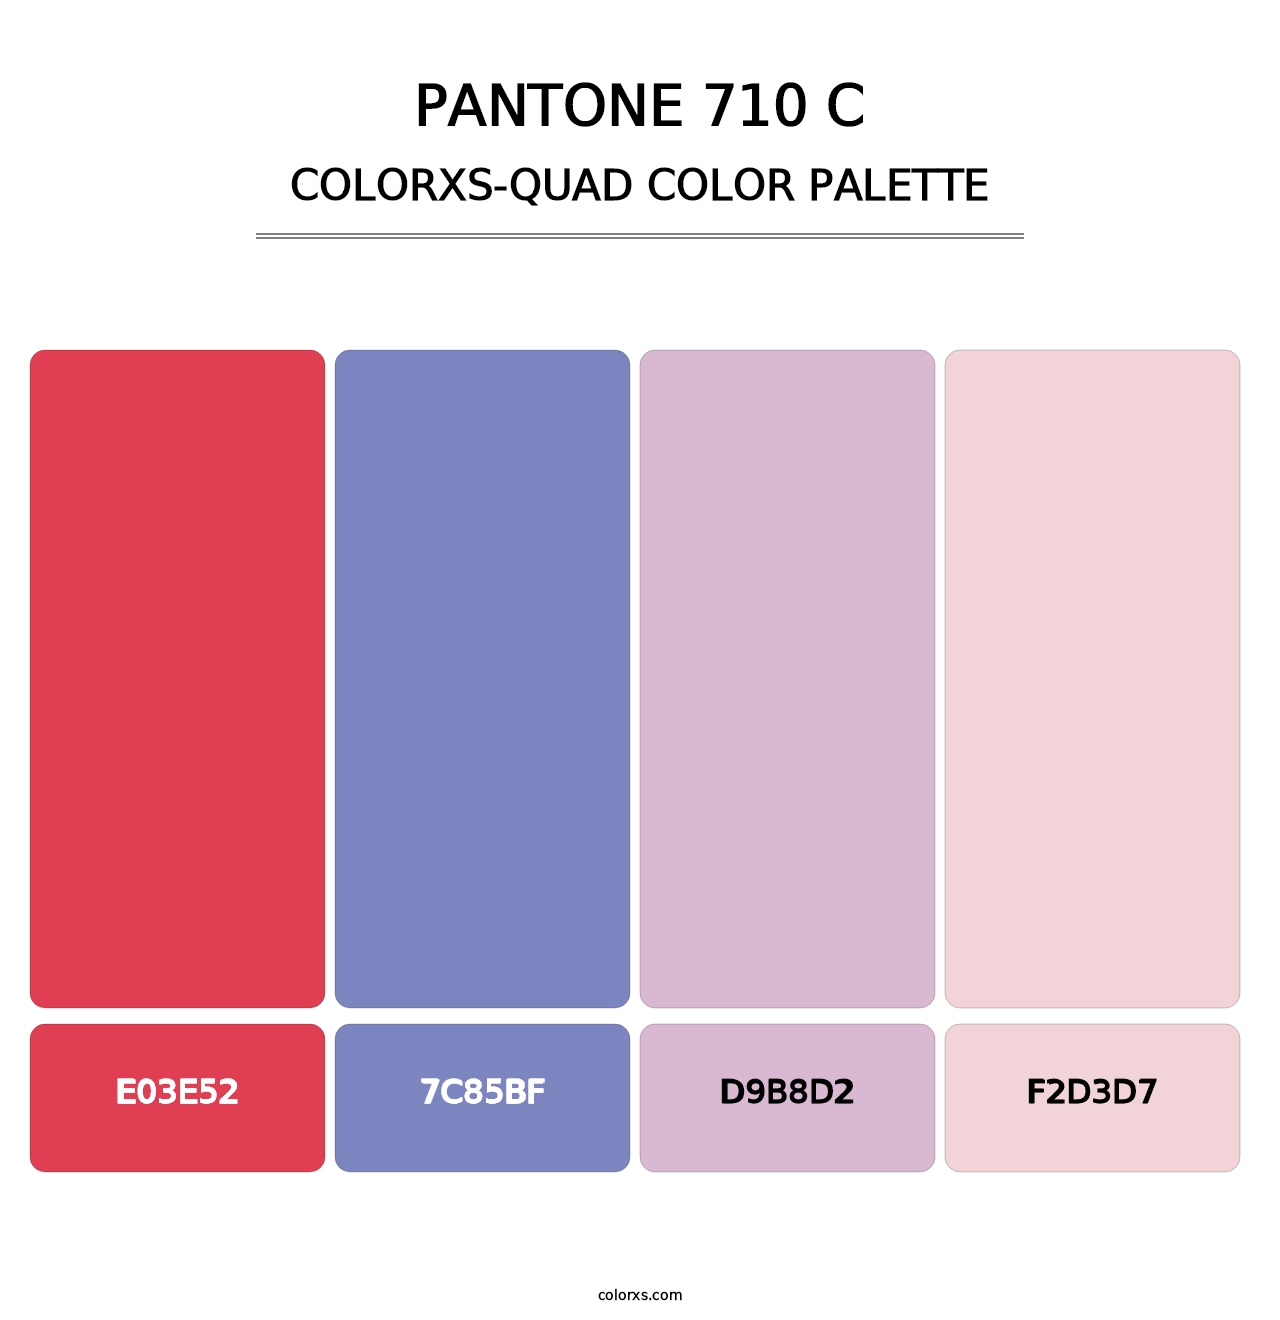 PANTONE 710 C - Colorxs Quad Palette